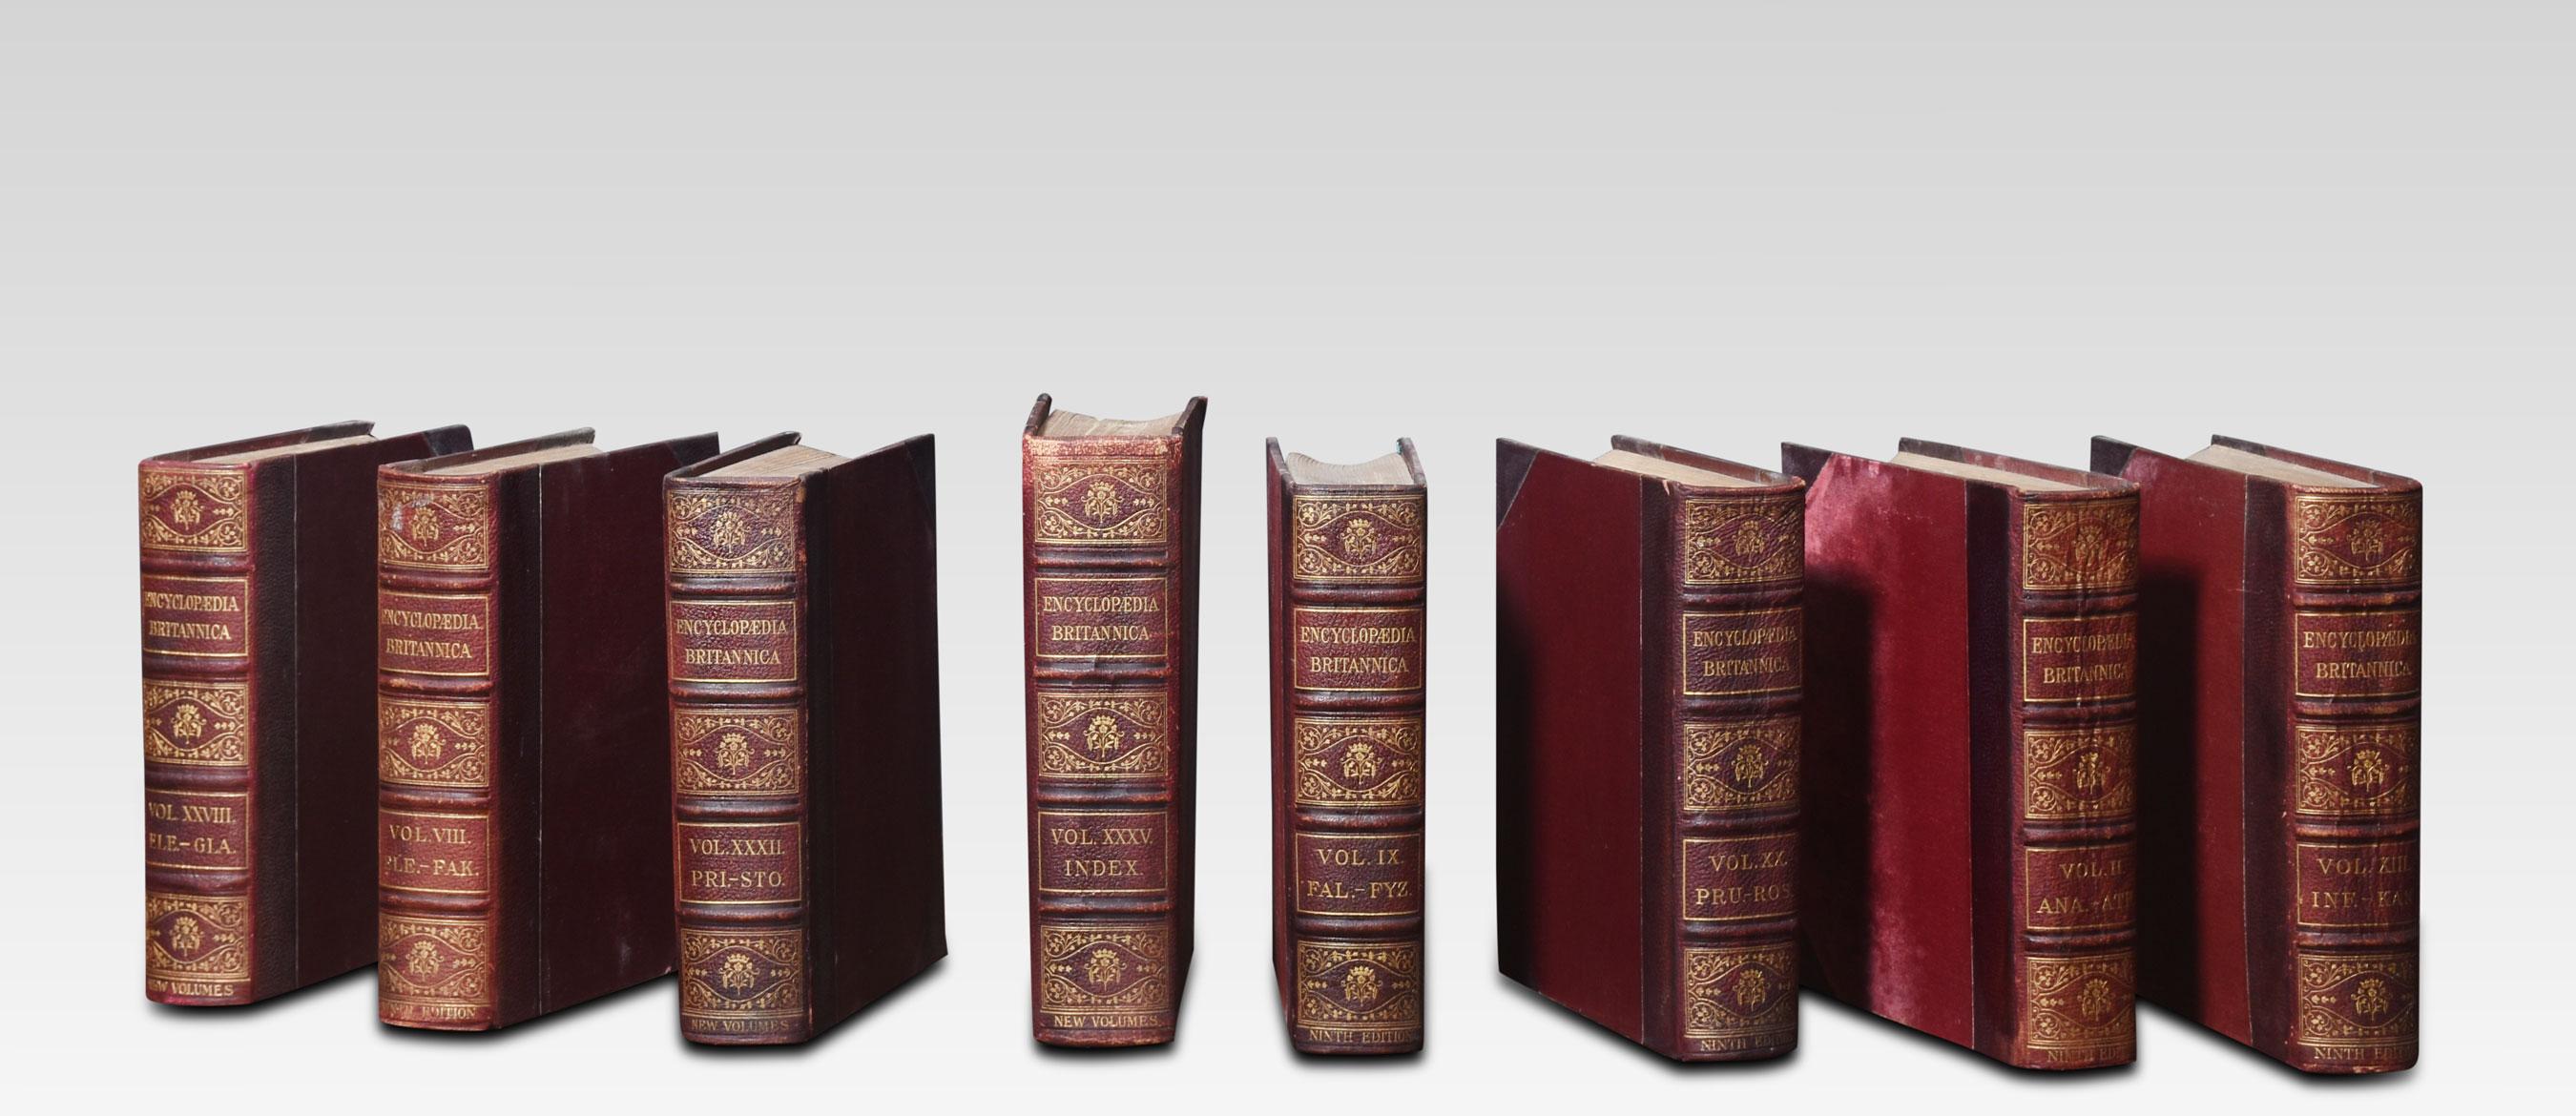 L'Encyclopaedia Britannica, comprenant la neuvième édition et les nouveaux volumes (dixième édition), compte 34 livres au total,
Dimensions
Hauteur 11,5 pouces
Largeur 9.5 pouces
Profondeur 3 pouces